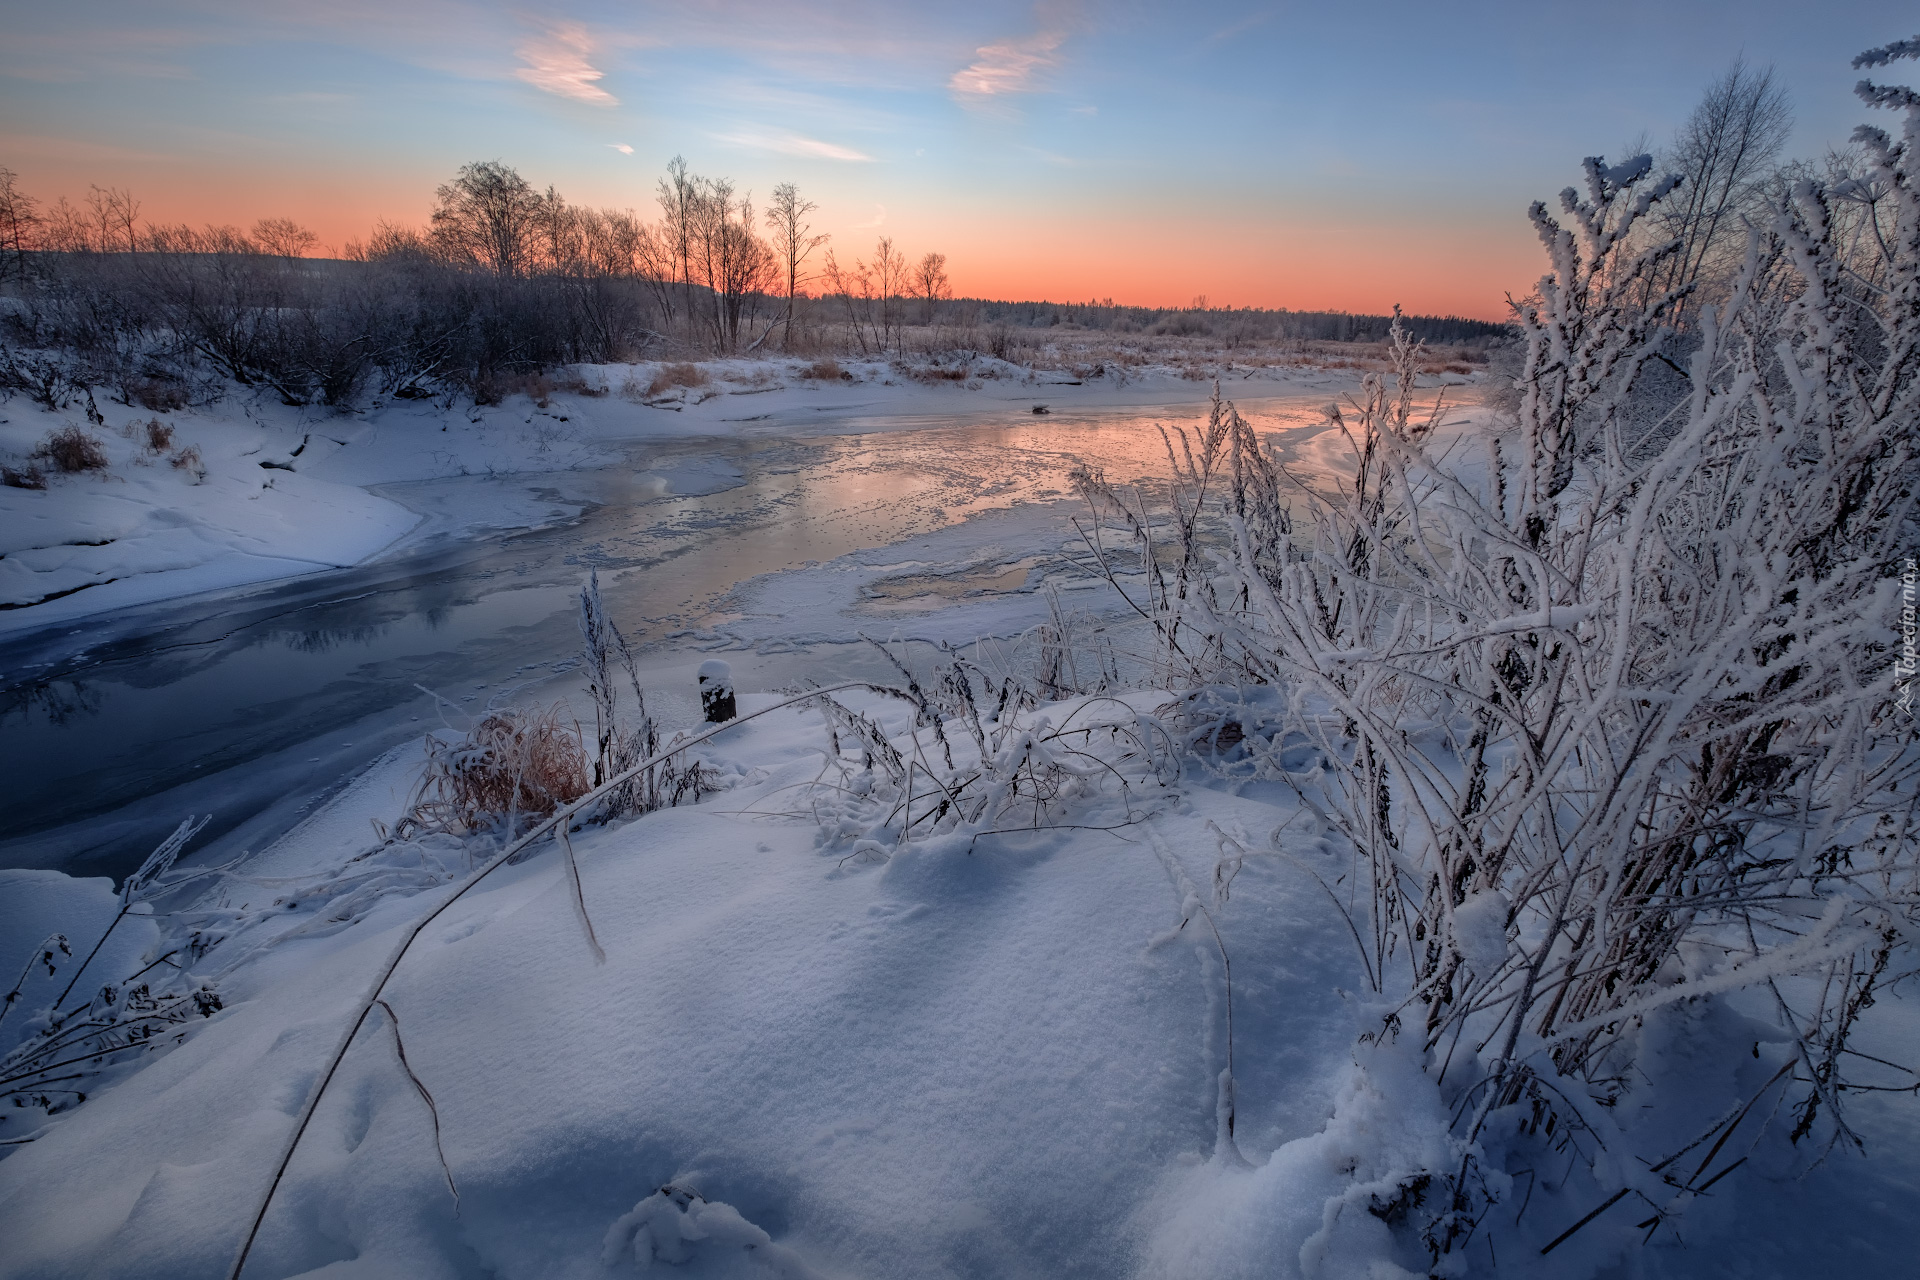 Rzeka Usolka, Rośliny, Drzewa, Zima, Wschód słońca, Kraj Permski, Rosja